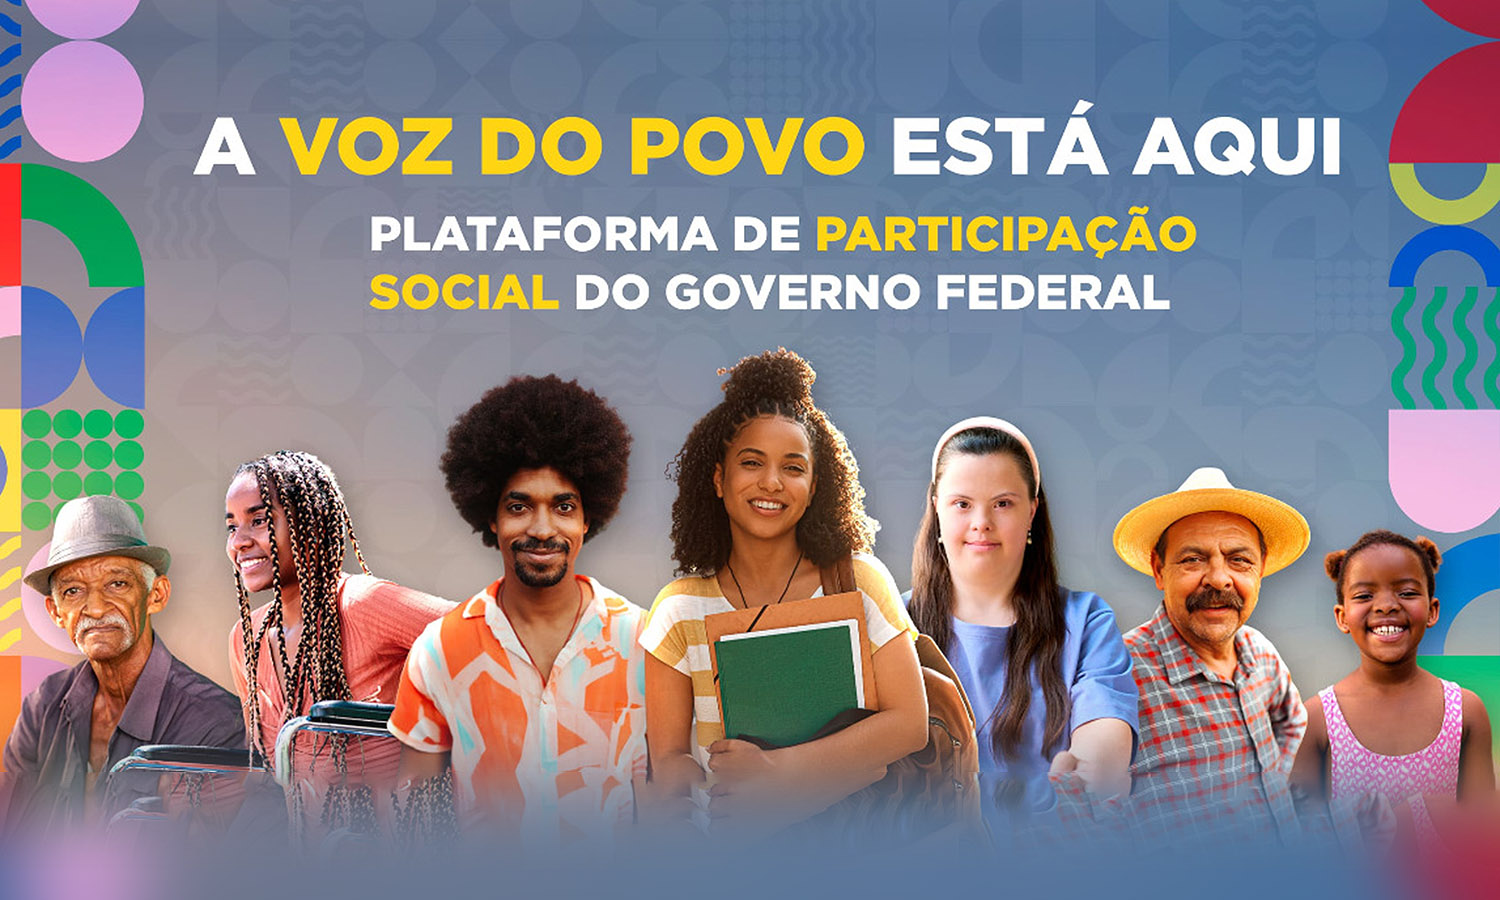 Brasil Participativo concentra e organiza todos os processos participativos do governo federal